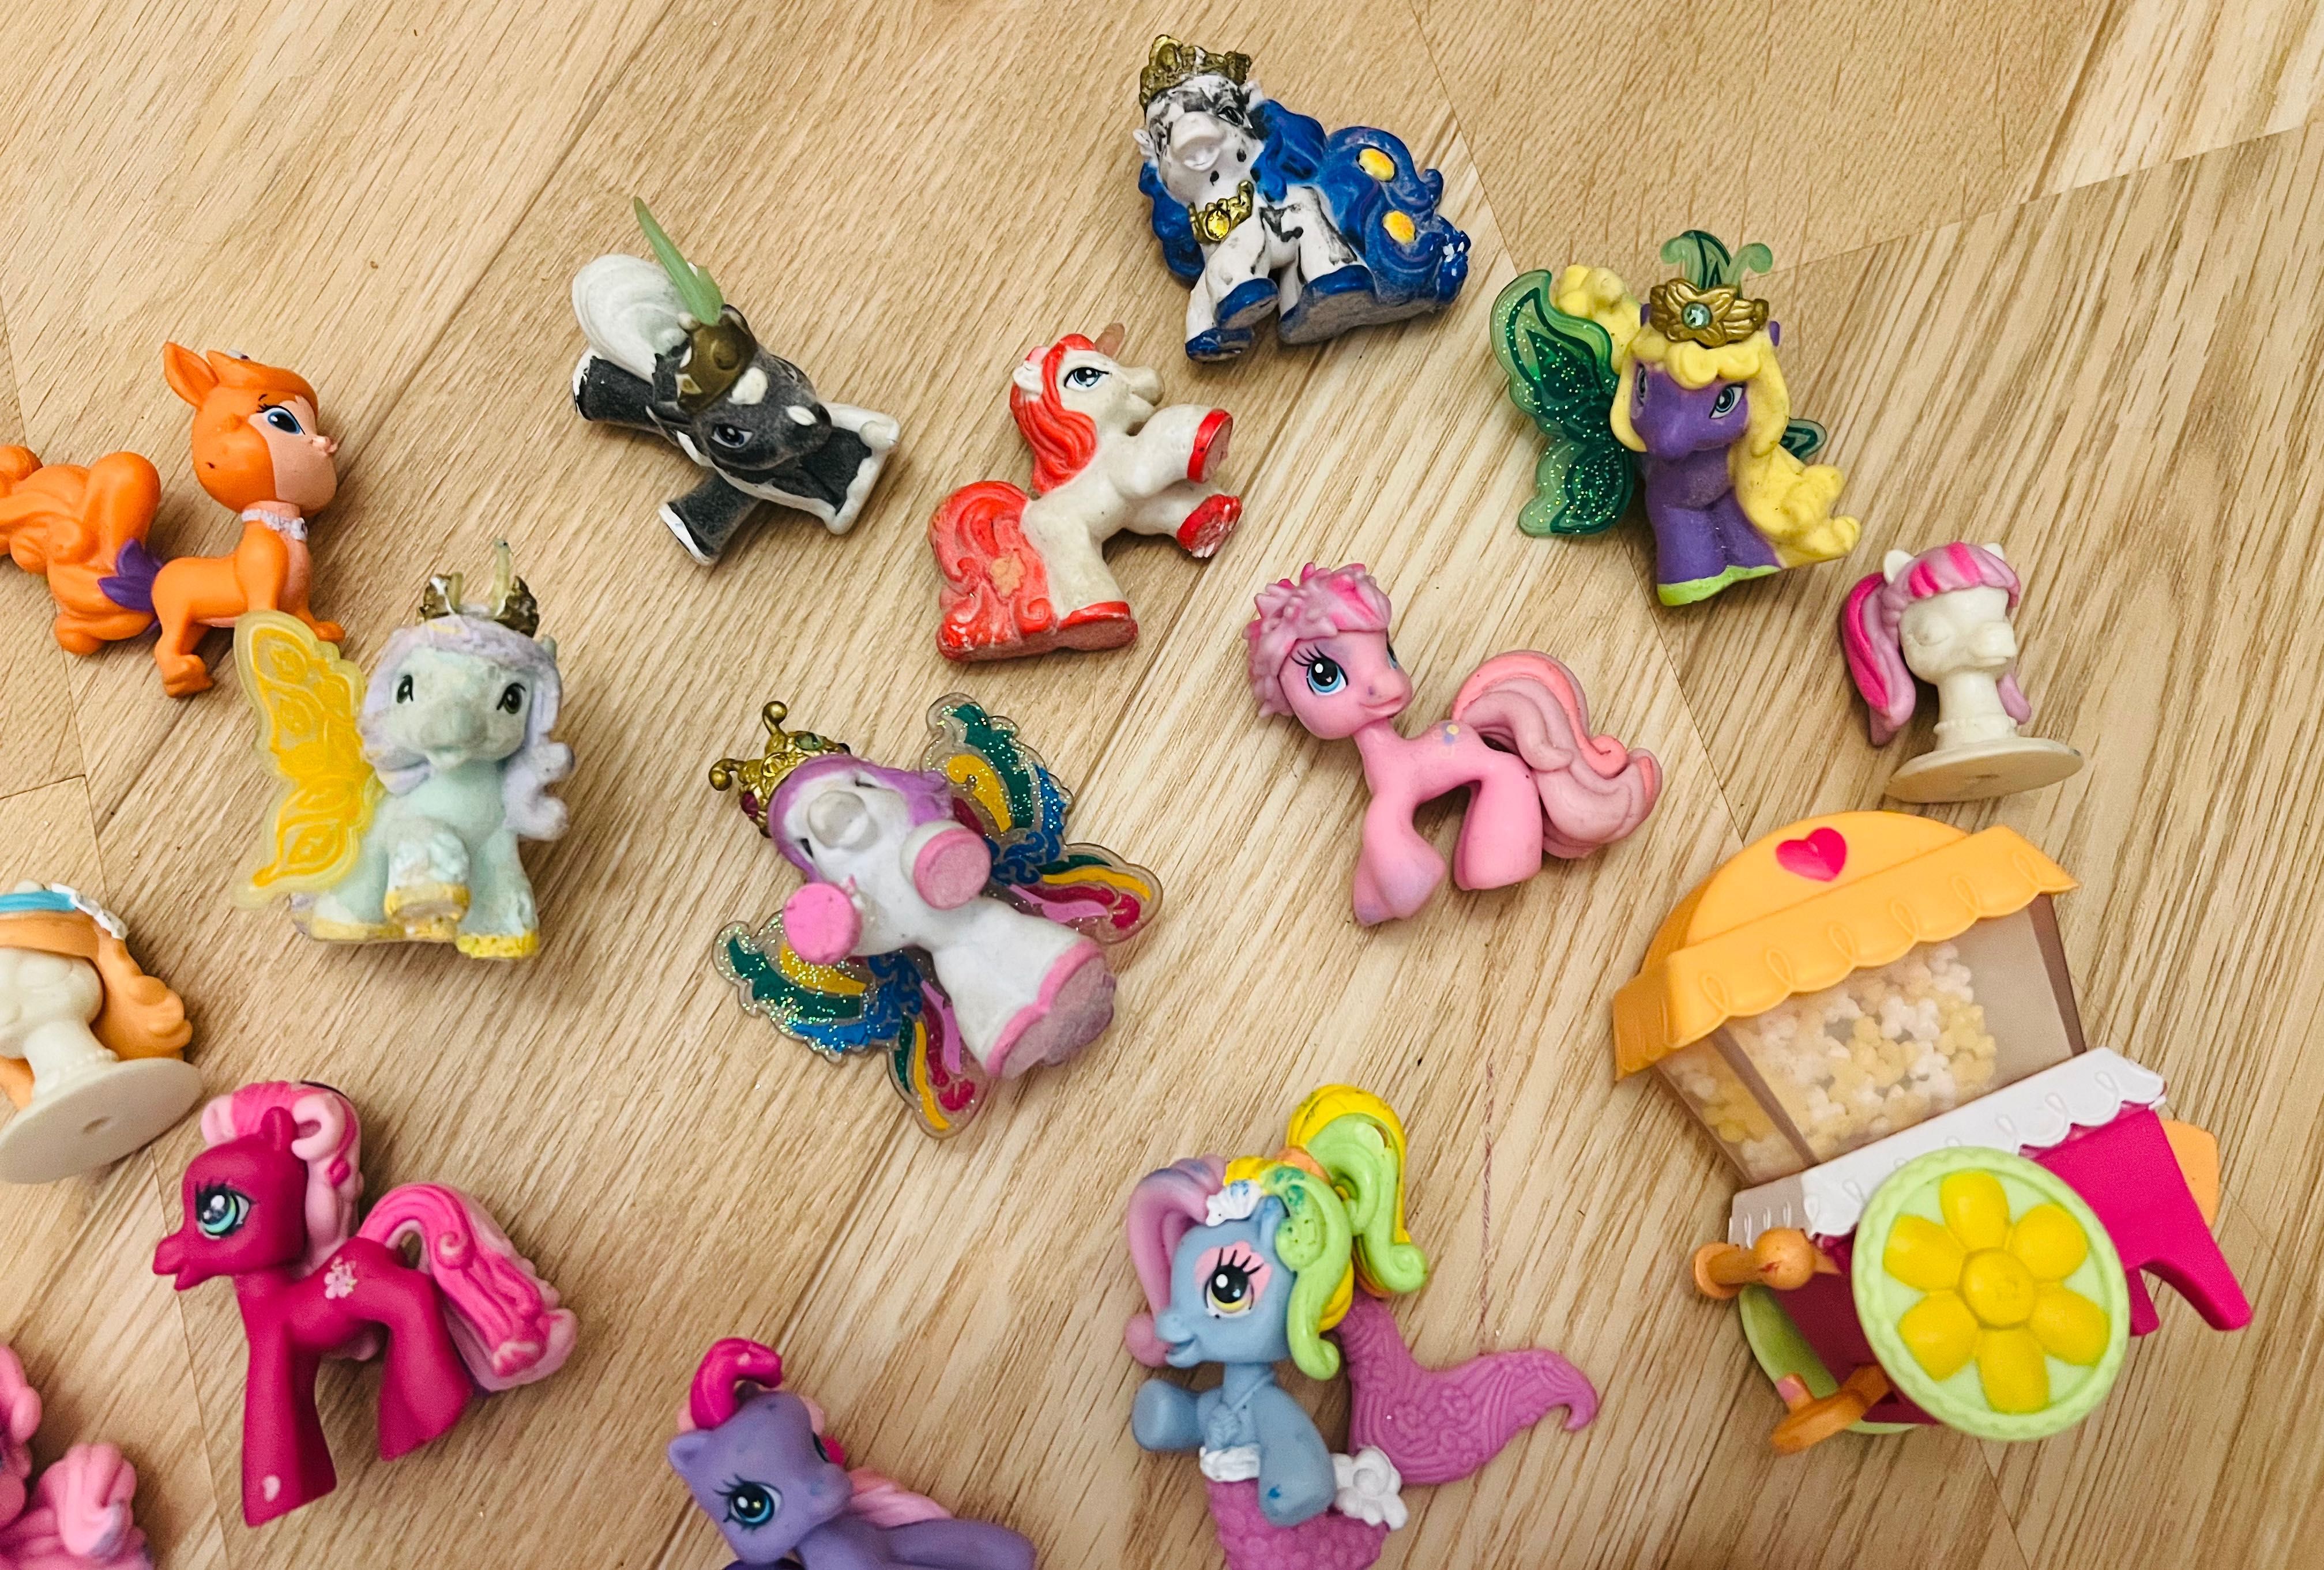 Kucyki My Little Pony figurki  firmy Hasbro